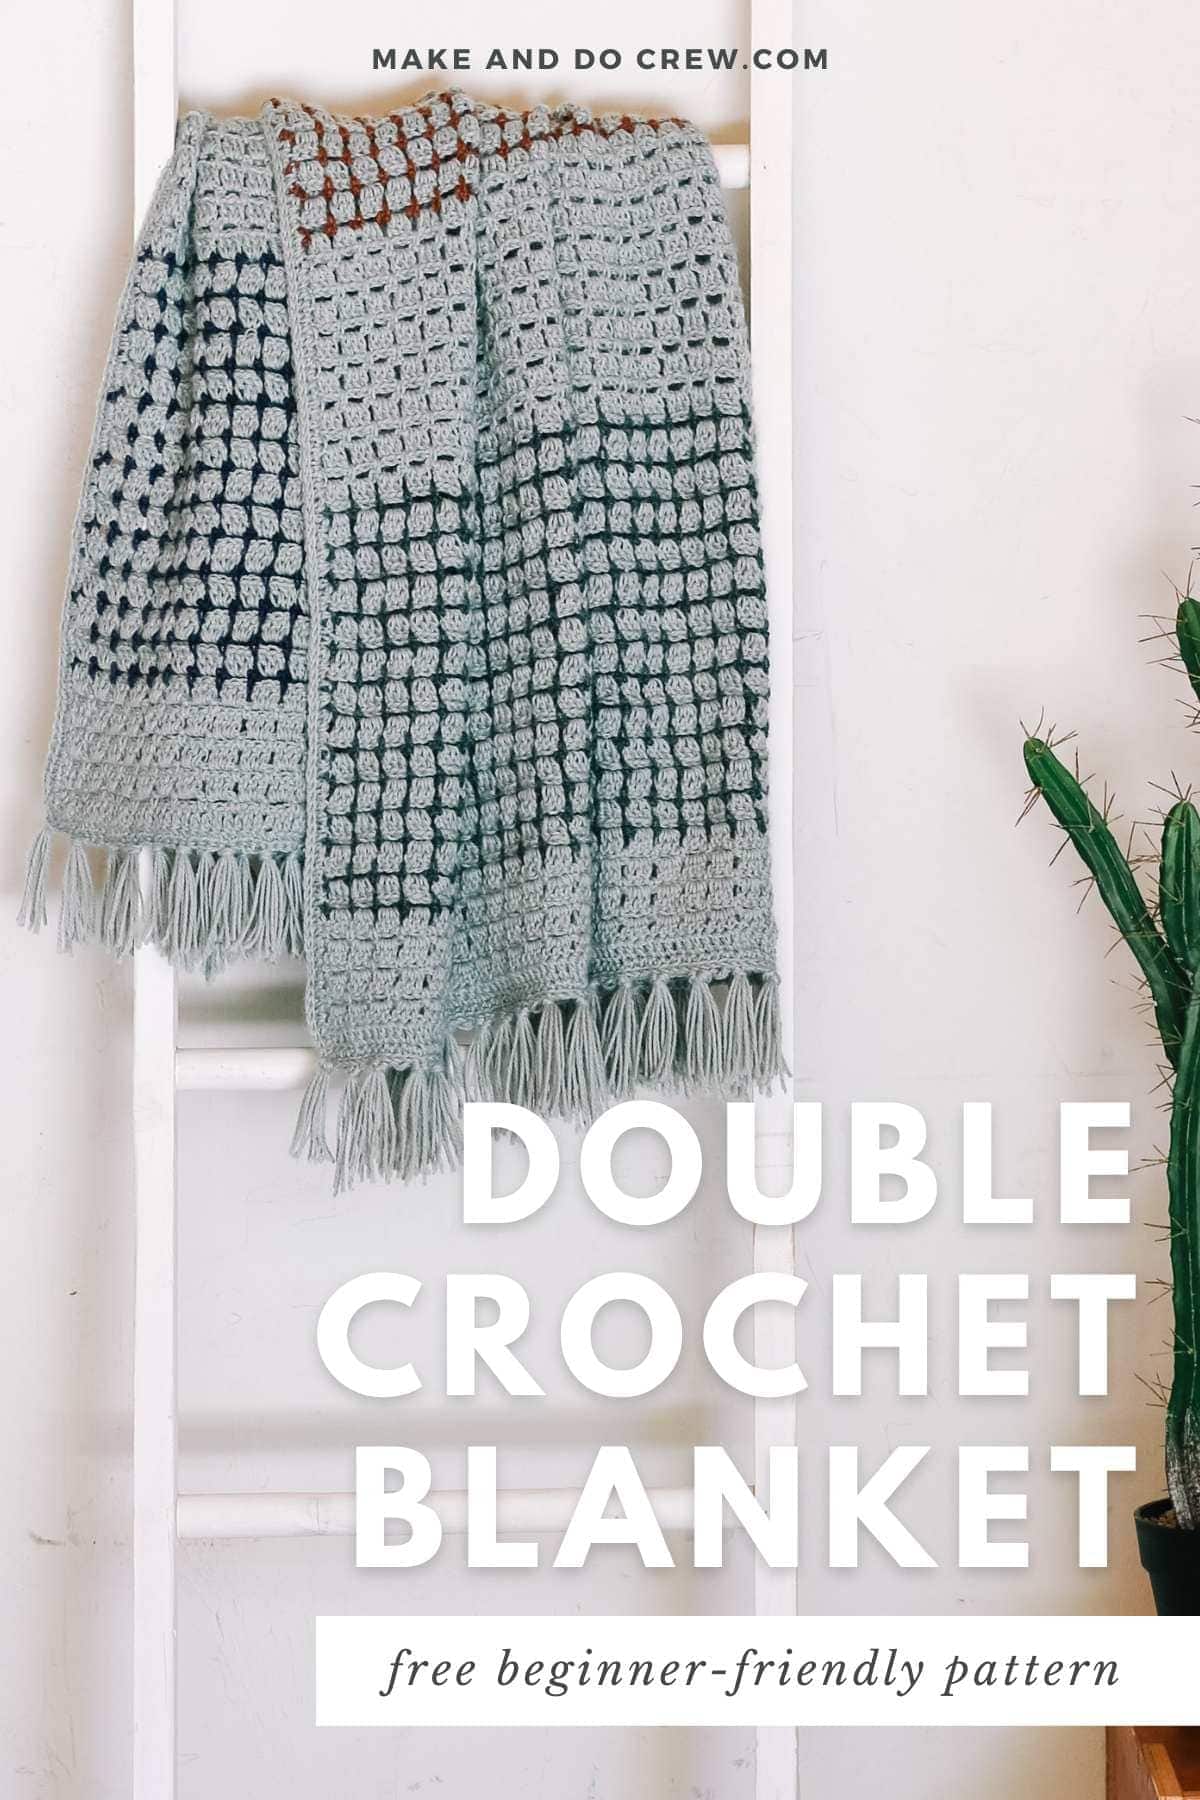 Double crochet blanket draped on a wooden stairs crochet pattern.